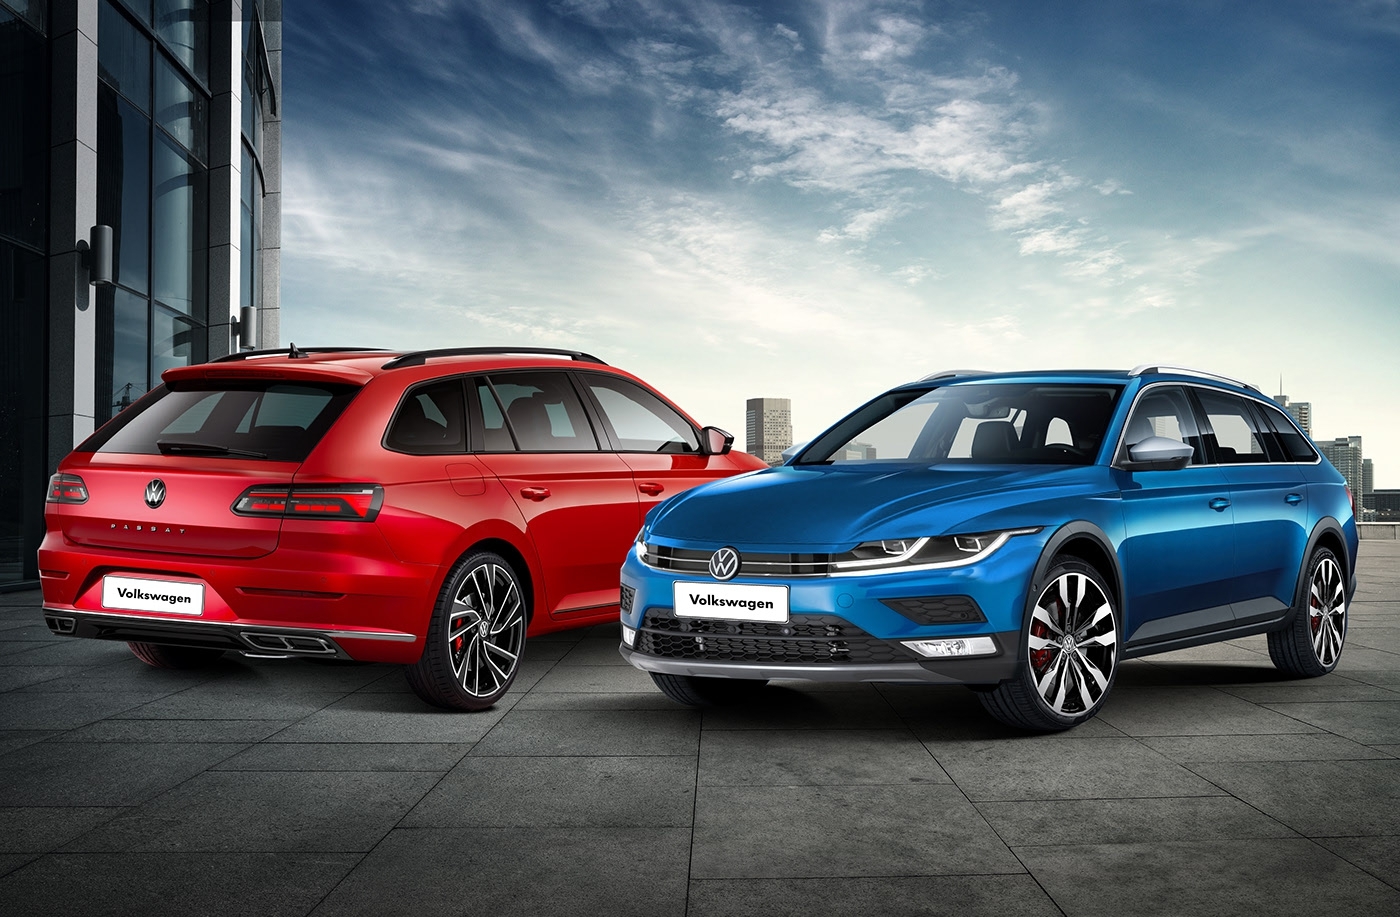 ปรับโฉมใหญ่! Volkswagen Passat B9 มาพร้อมดีไซน์เดียวกับ Arteon คาดเปิดตัวปี 2023